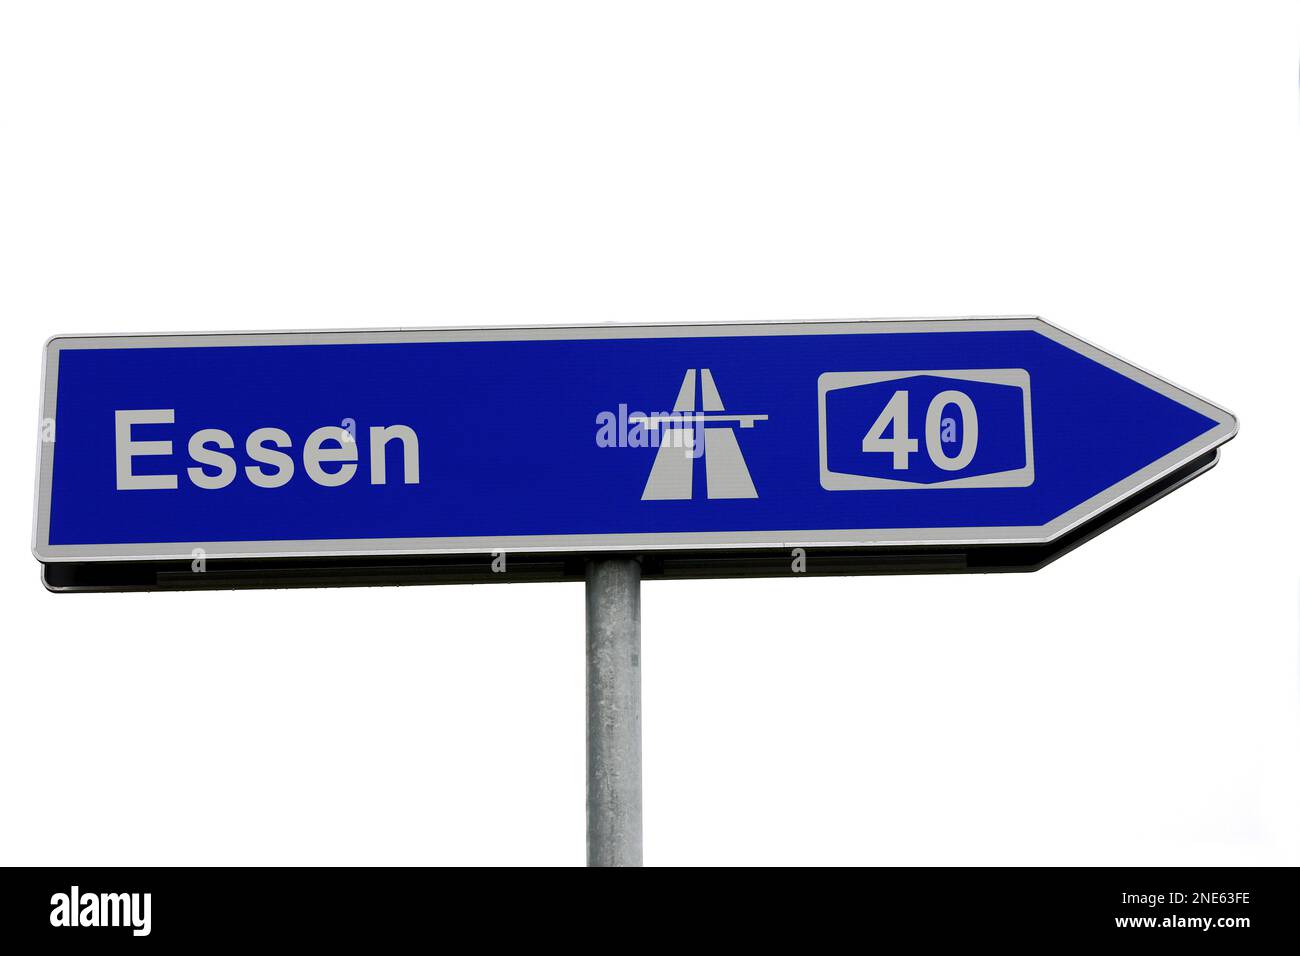 Indicazioni per l'autostrada A40 in direzione Essen, Germania Foto Stock